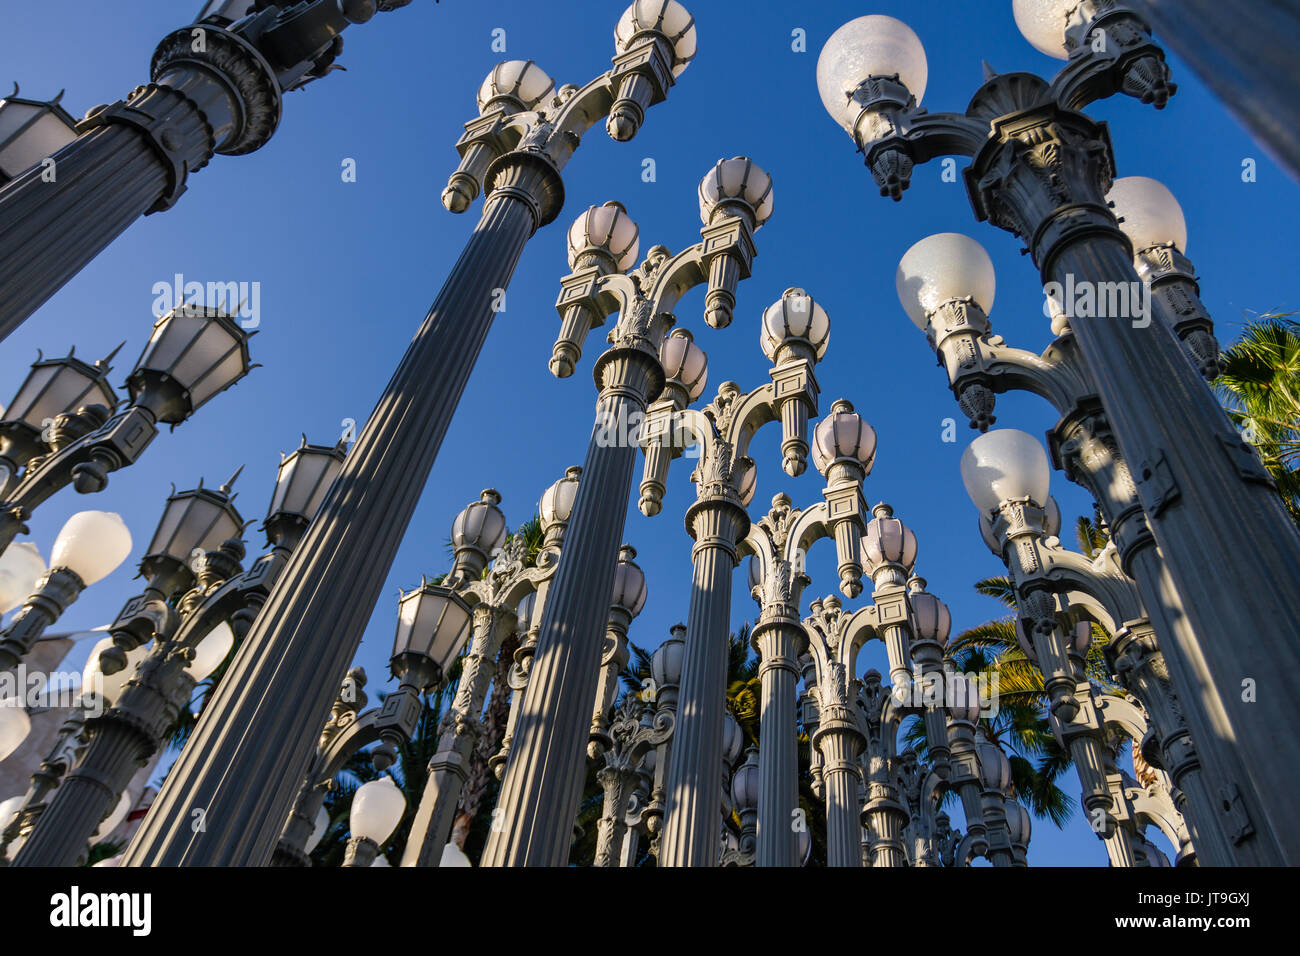 Urban Light ist ein groß angelegtes Assemblage Skulptur von Chris Burden am Wilshire Boulevard Eingang des Los Angeles County Museum für Kunst. Stockfoto